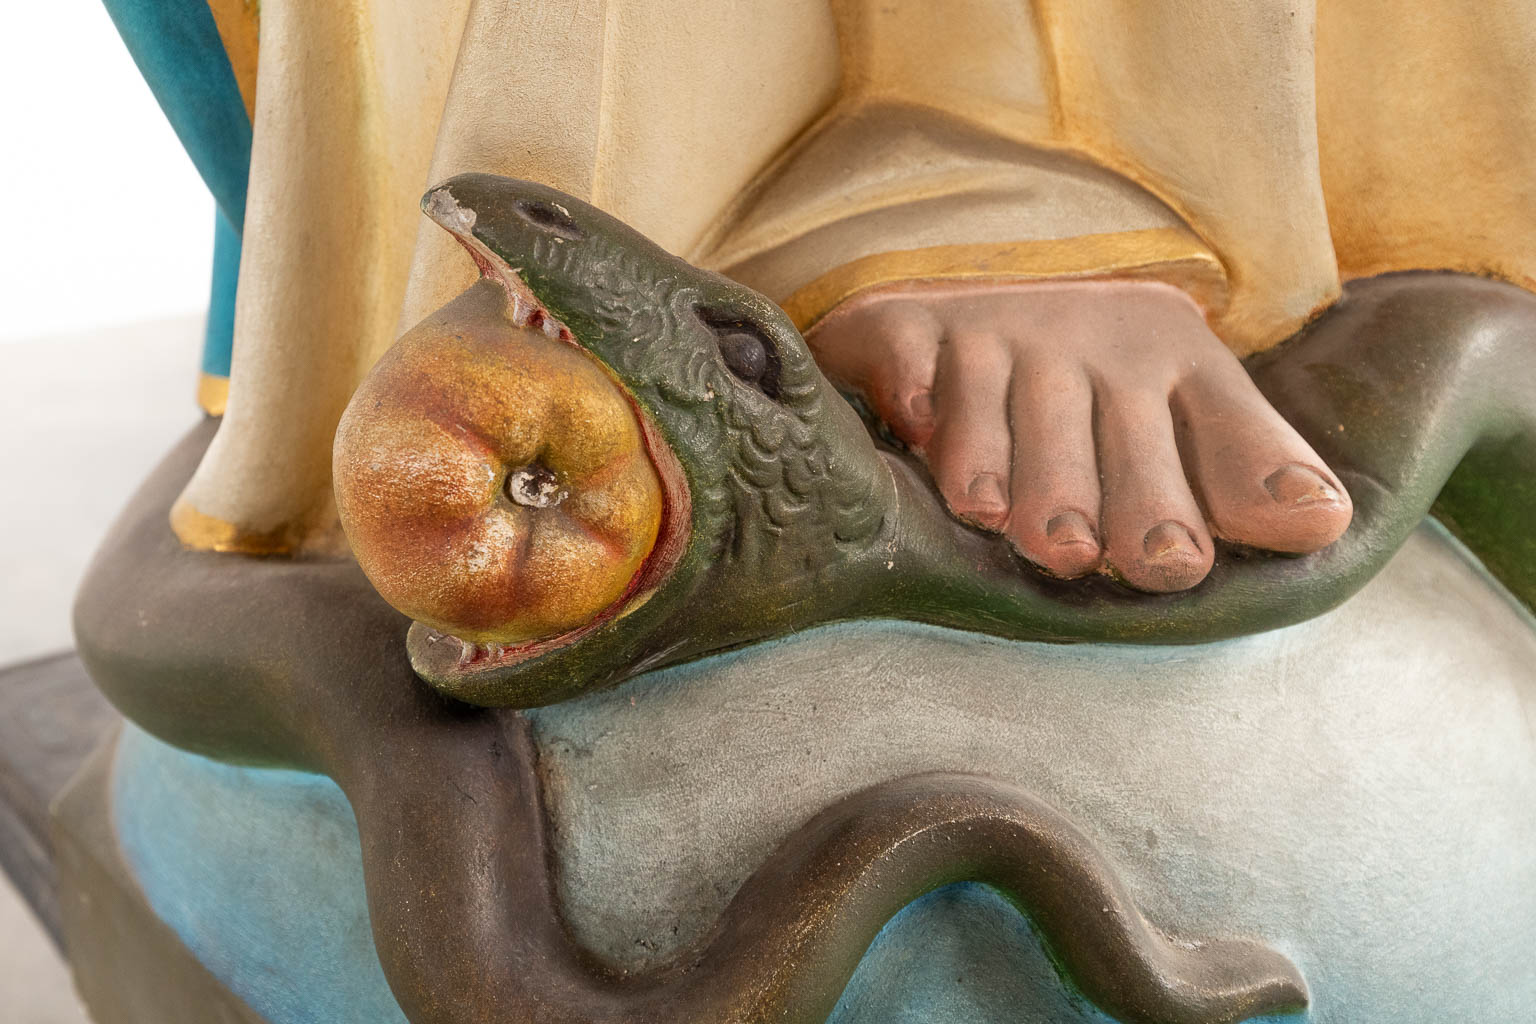 Een levensgrote figuur van Madonna, vertrappelt het serpent. Gepatineerd plaaster. Circa 1900. (D:43 x W:72 x H:183 cm)